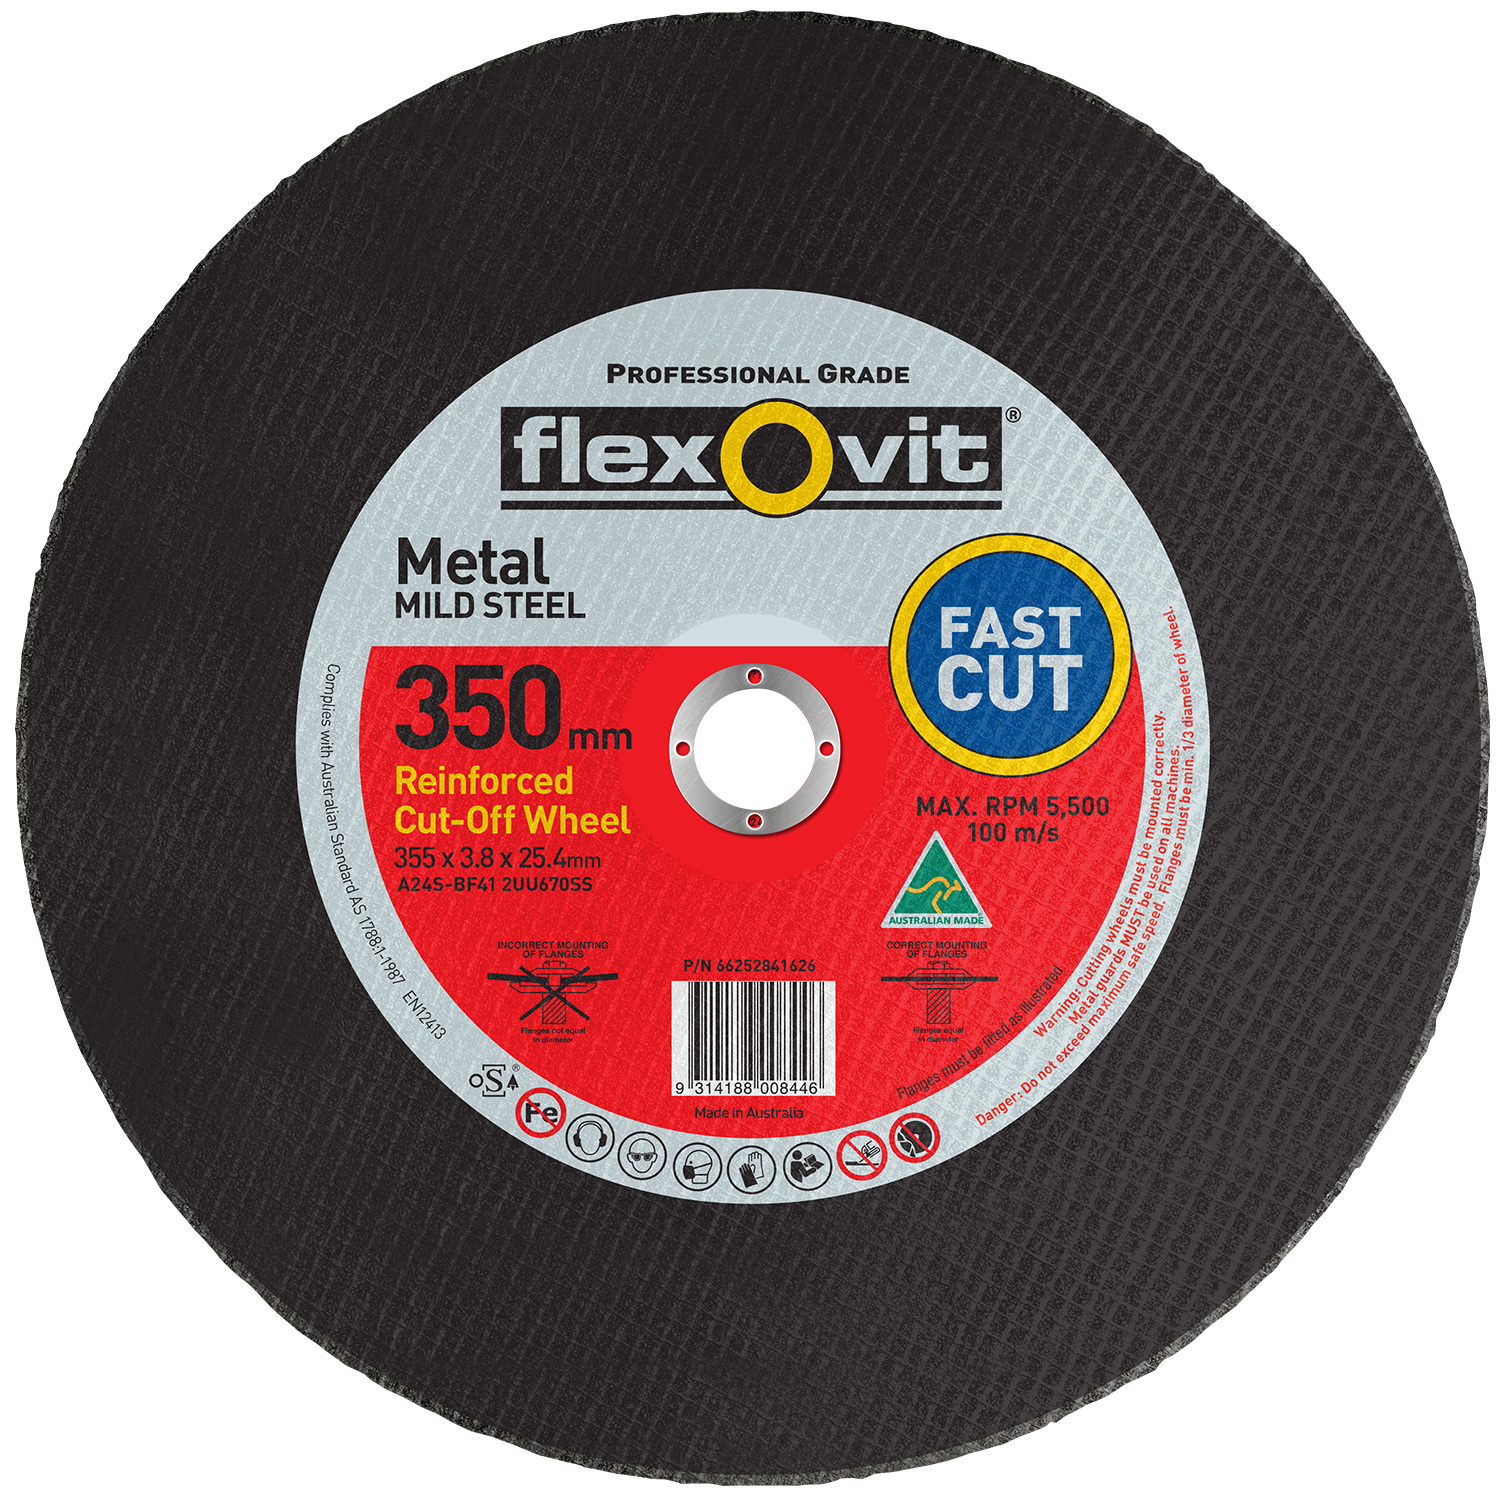 Flexovit 350x3.8x25.4mm 2UU670SS Metal Cut-Off Wheel Type 41 66252841626